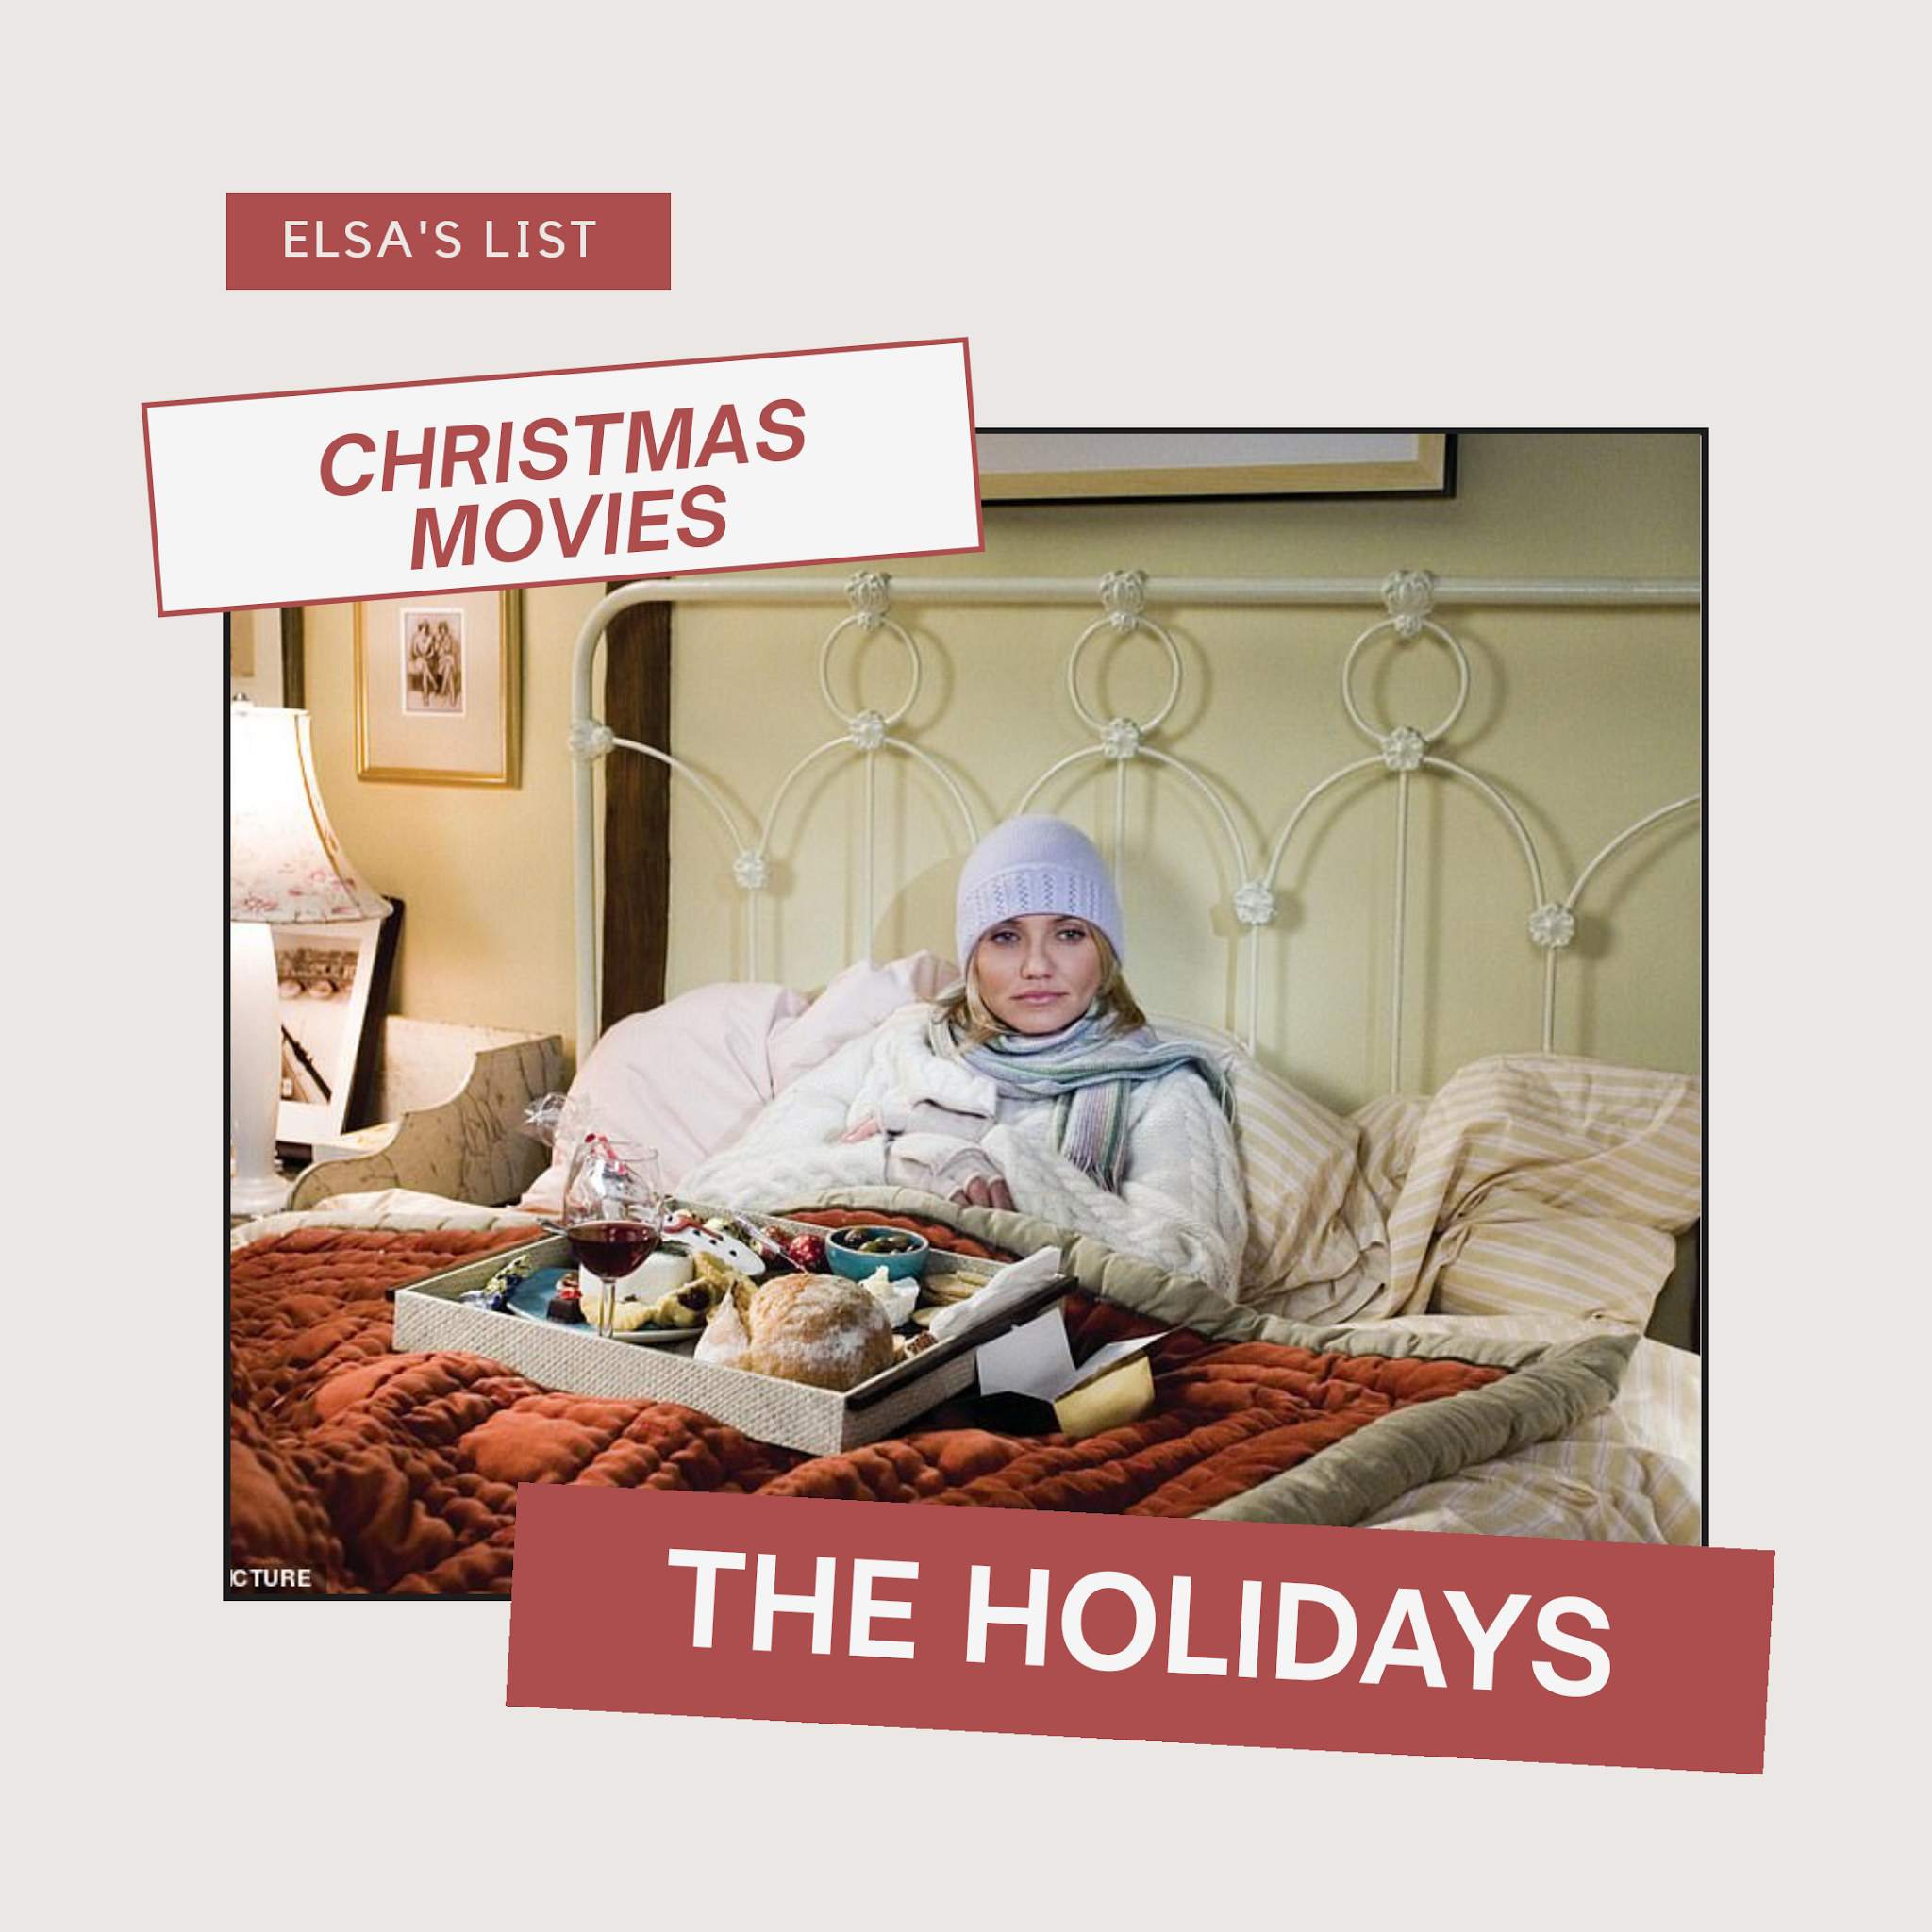 5-peliculas-navideñas-que-ver-navidad-vacaciones-the-holiday